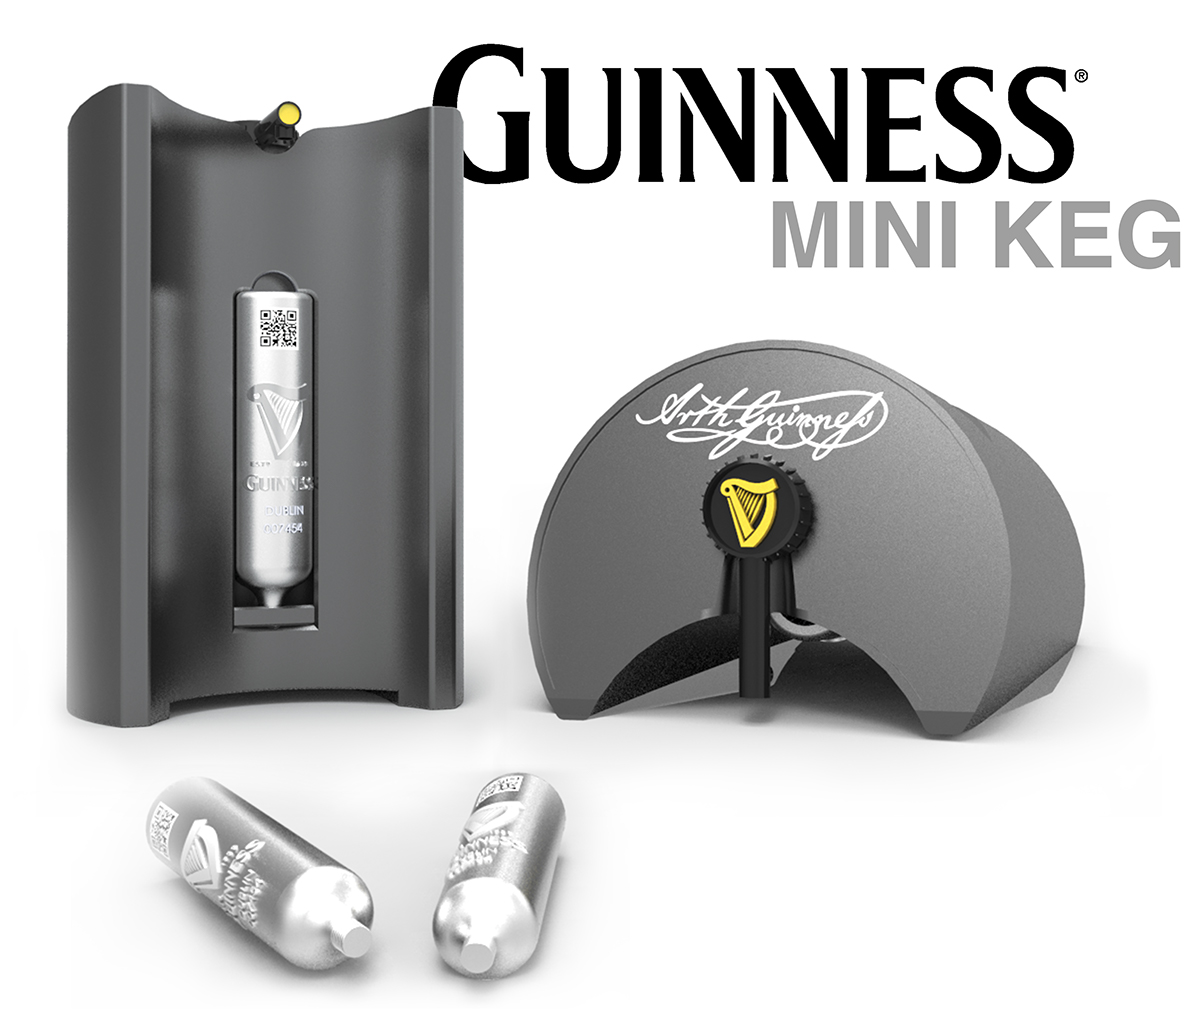 guinness kegs Mini Kegs alcohol beer NUIM maynooth diageo